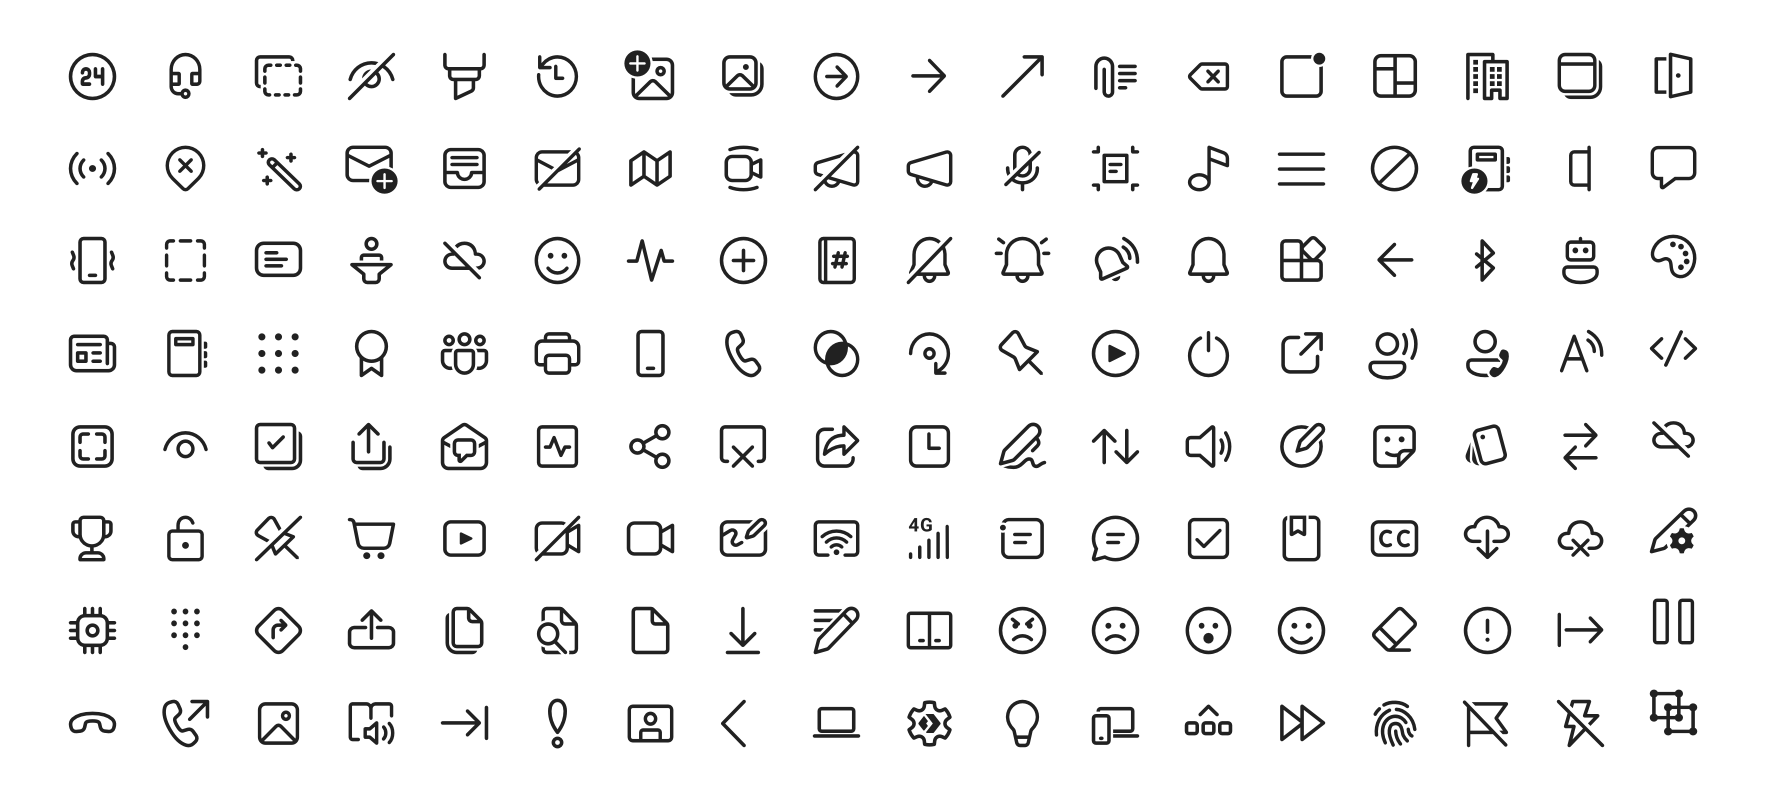 fluentui-system-icons